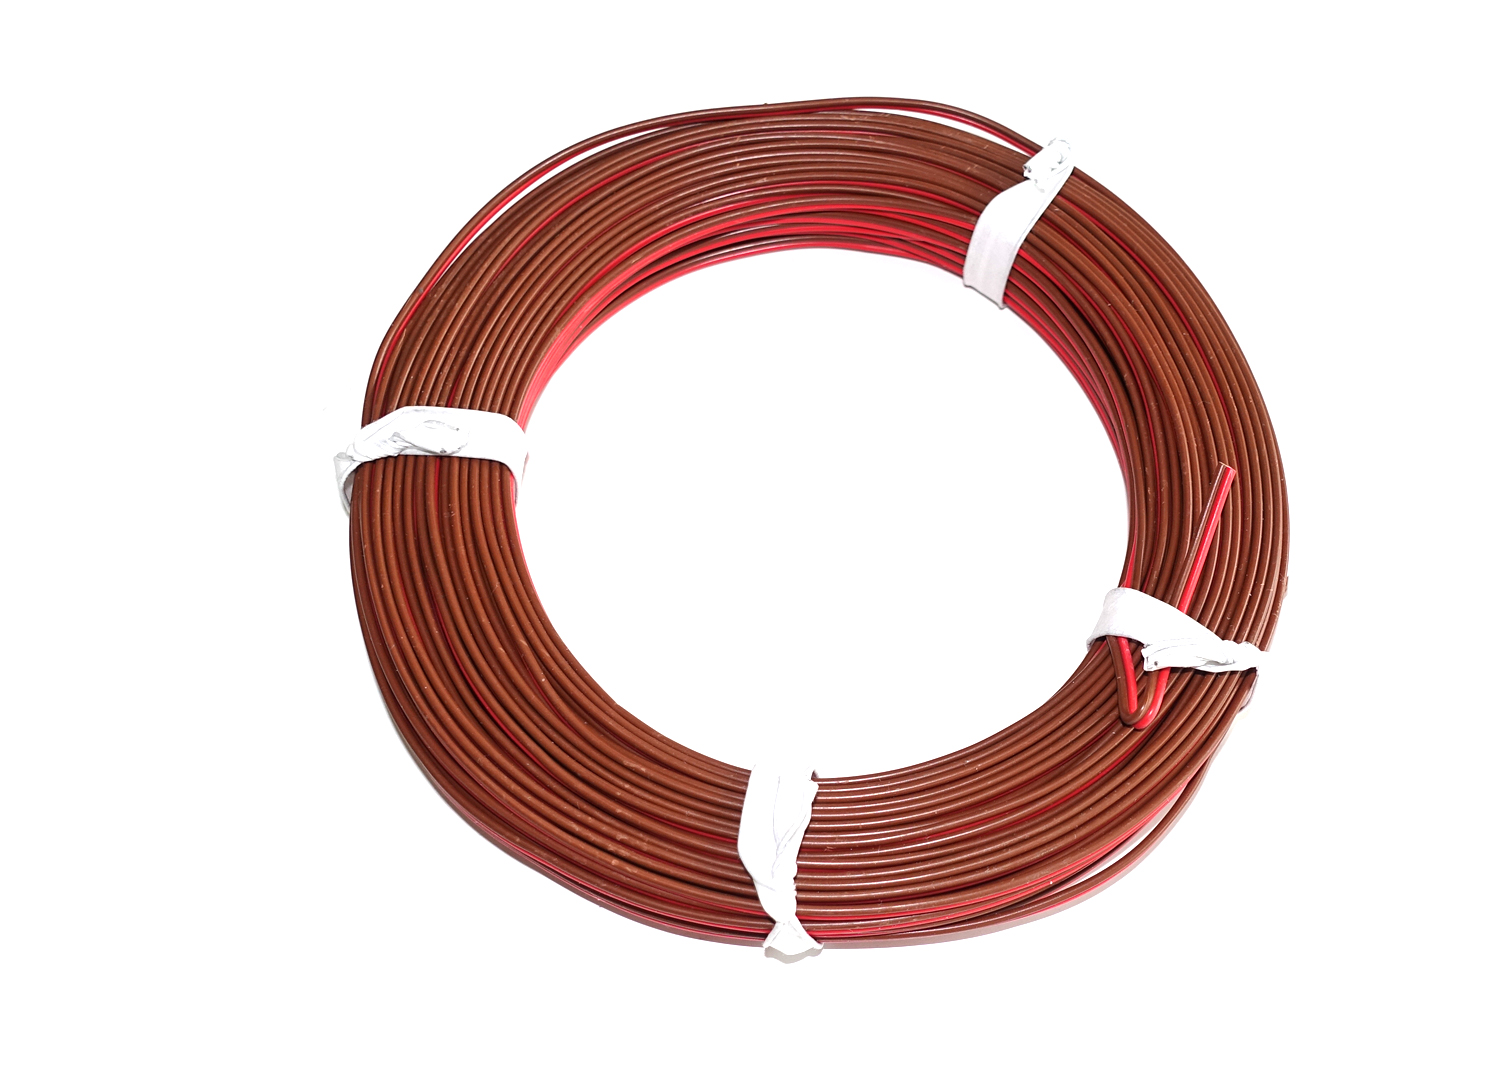 Kabel 2-Litzen, D 0.14 mm², 25 m, rot/braun